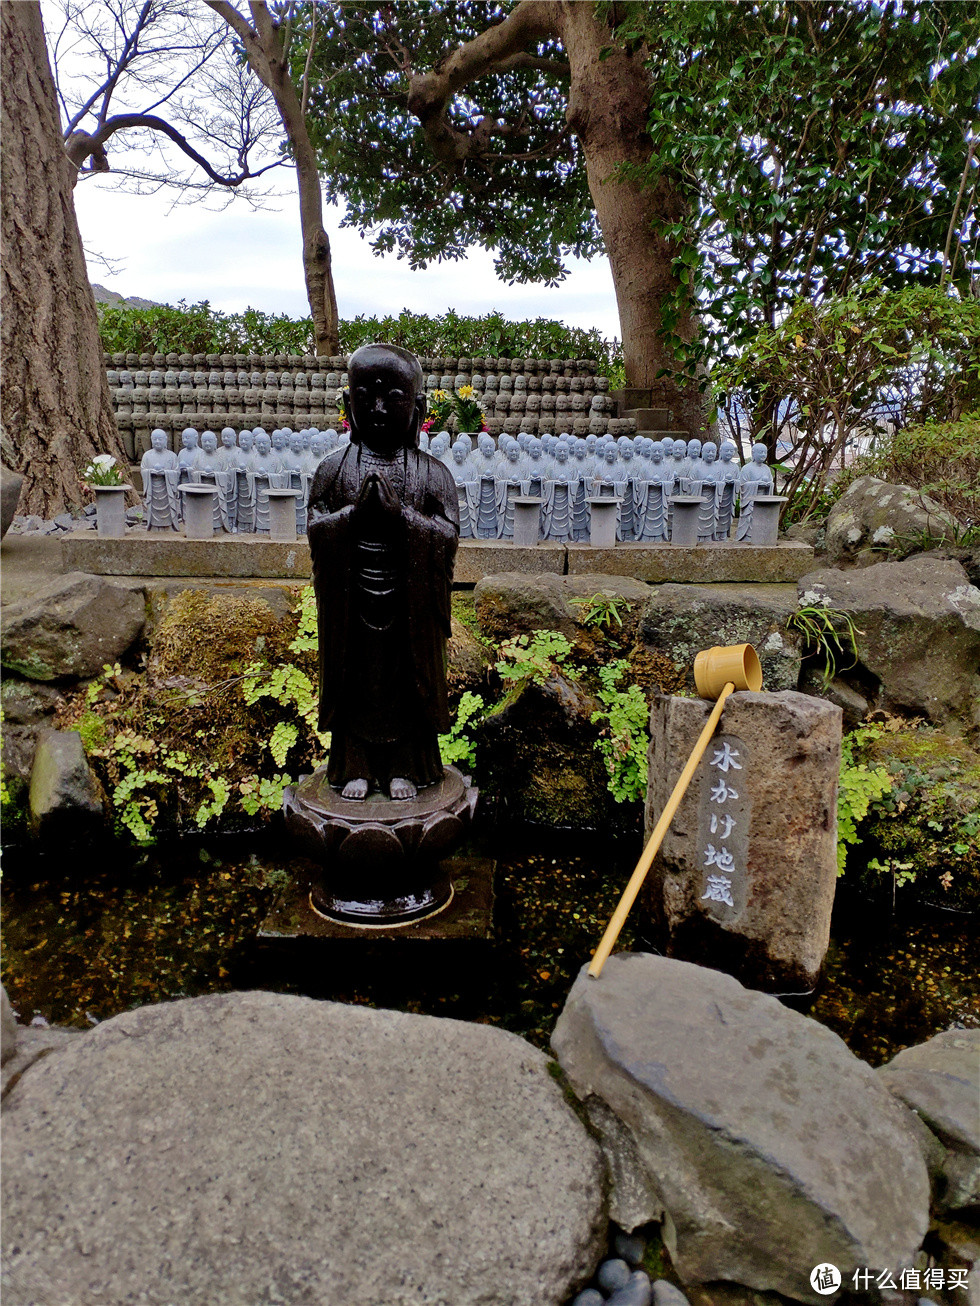 水地藏，我傻乎乎的舀了一勺水从头浇下，结果看后面的日本大妈只浇两边肩膀的。立刻鞠躬道歉，重新浇水。